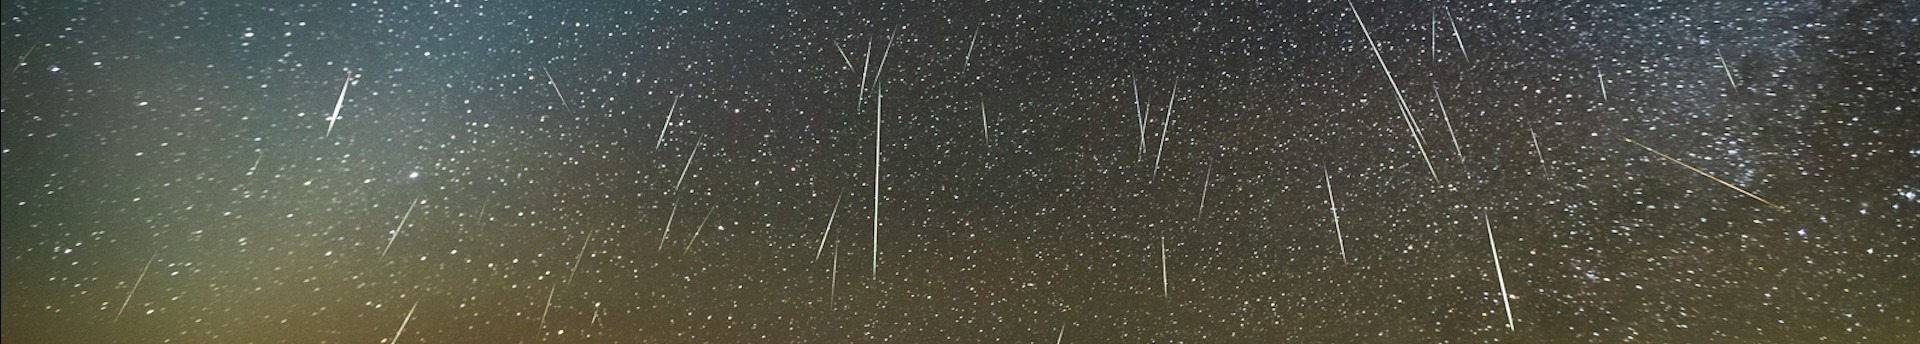 A Leonidák hullócsillag raj dús meteorkitörést hozhat idén